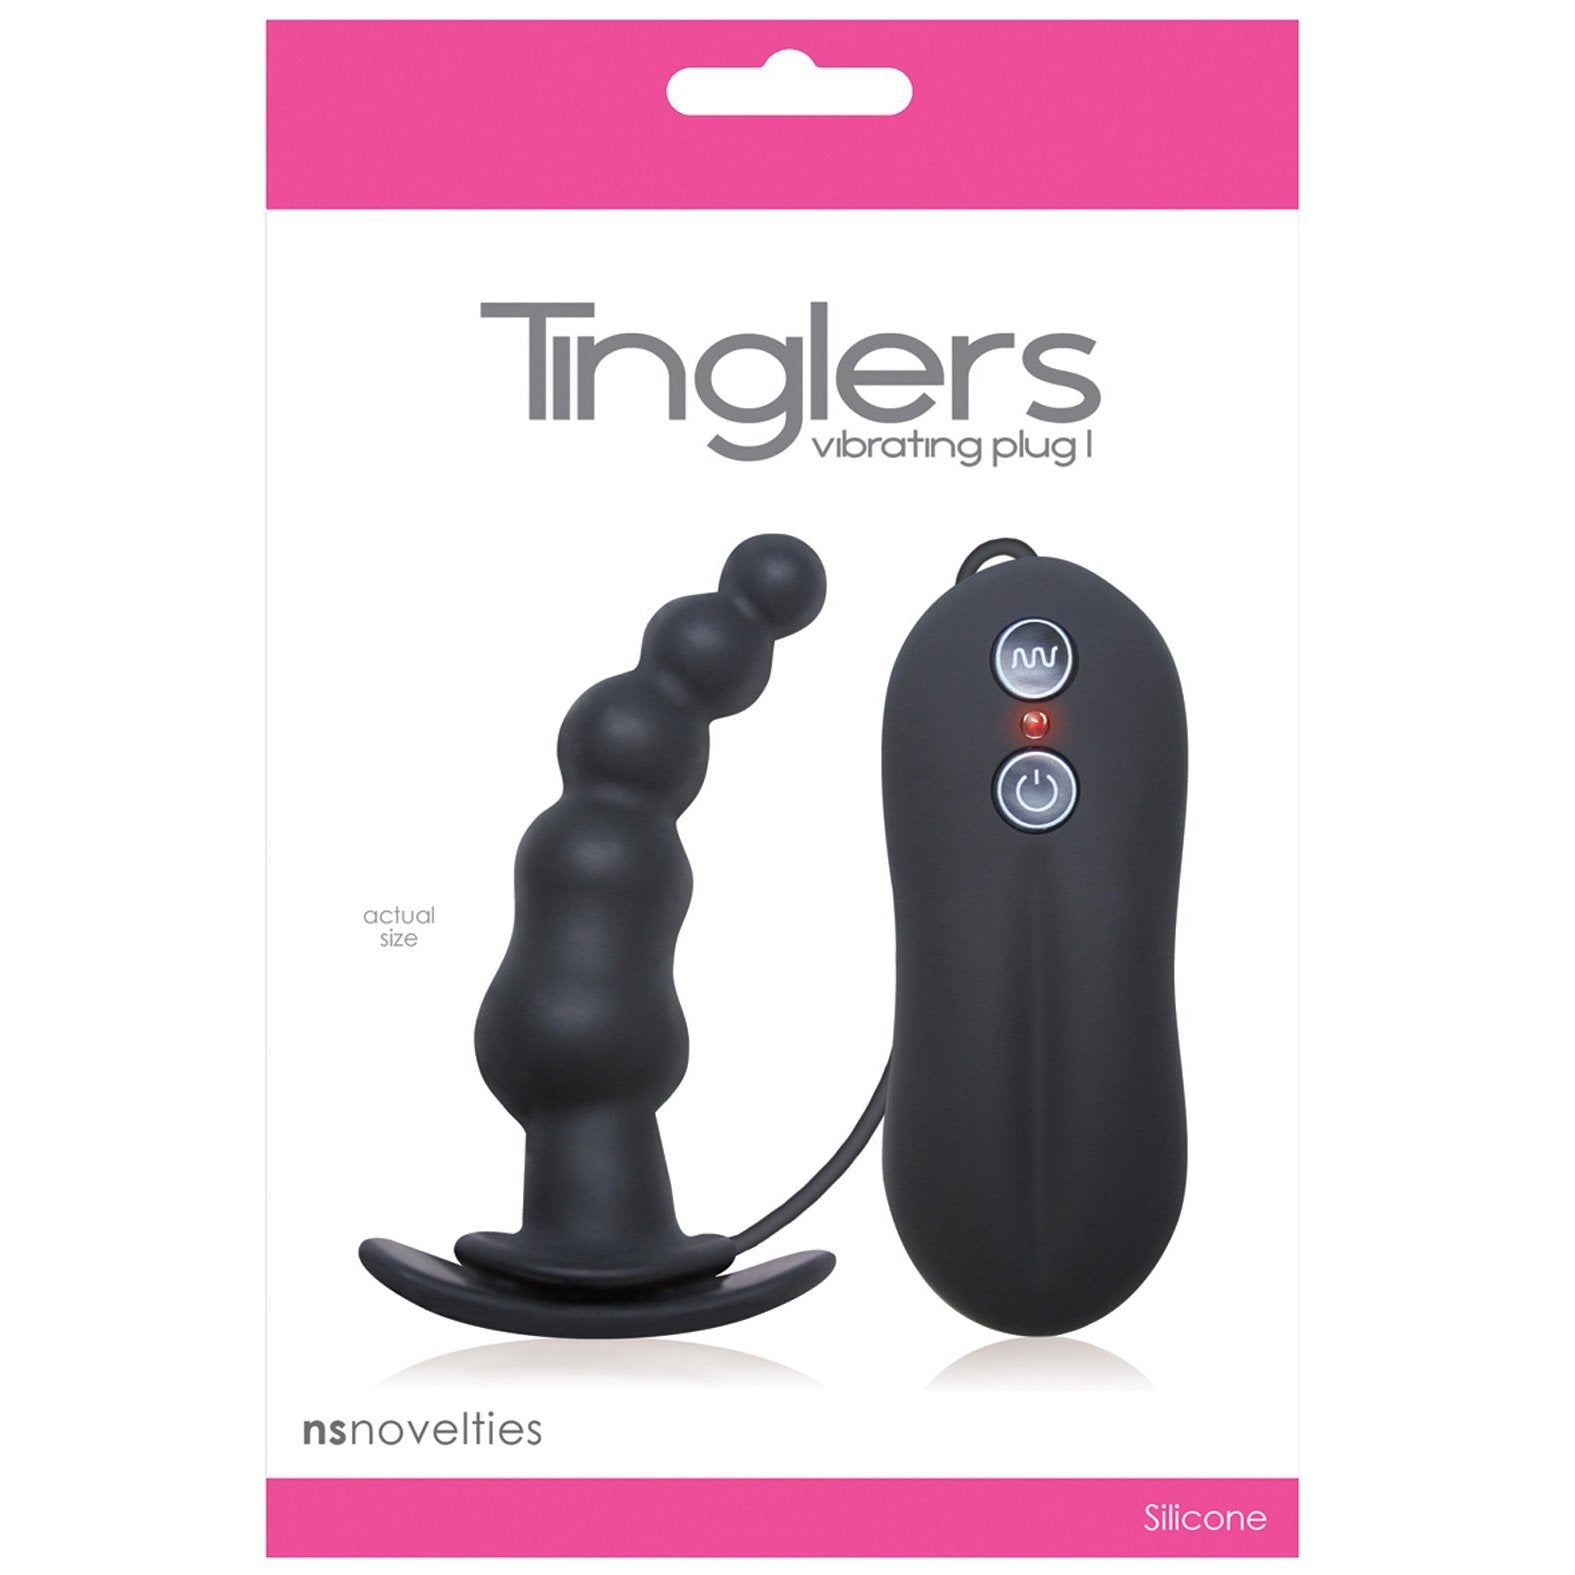 Tinglers Vibrating Butt Plug #1